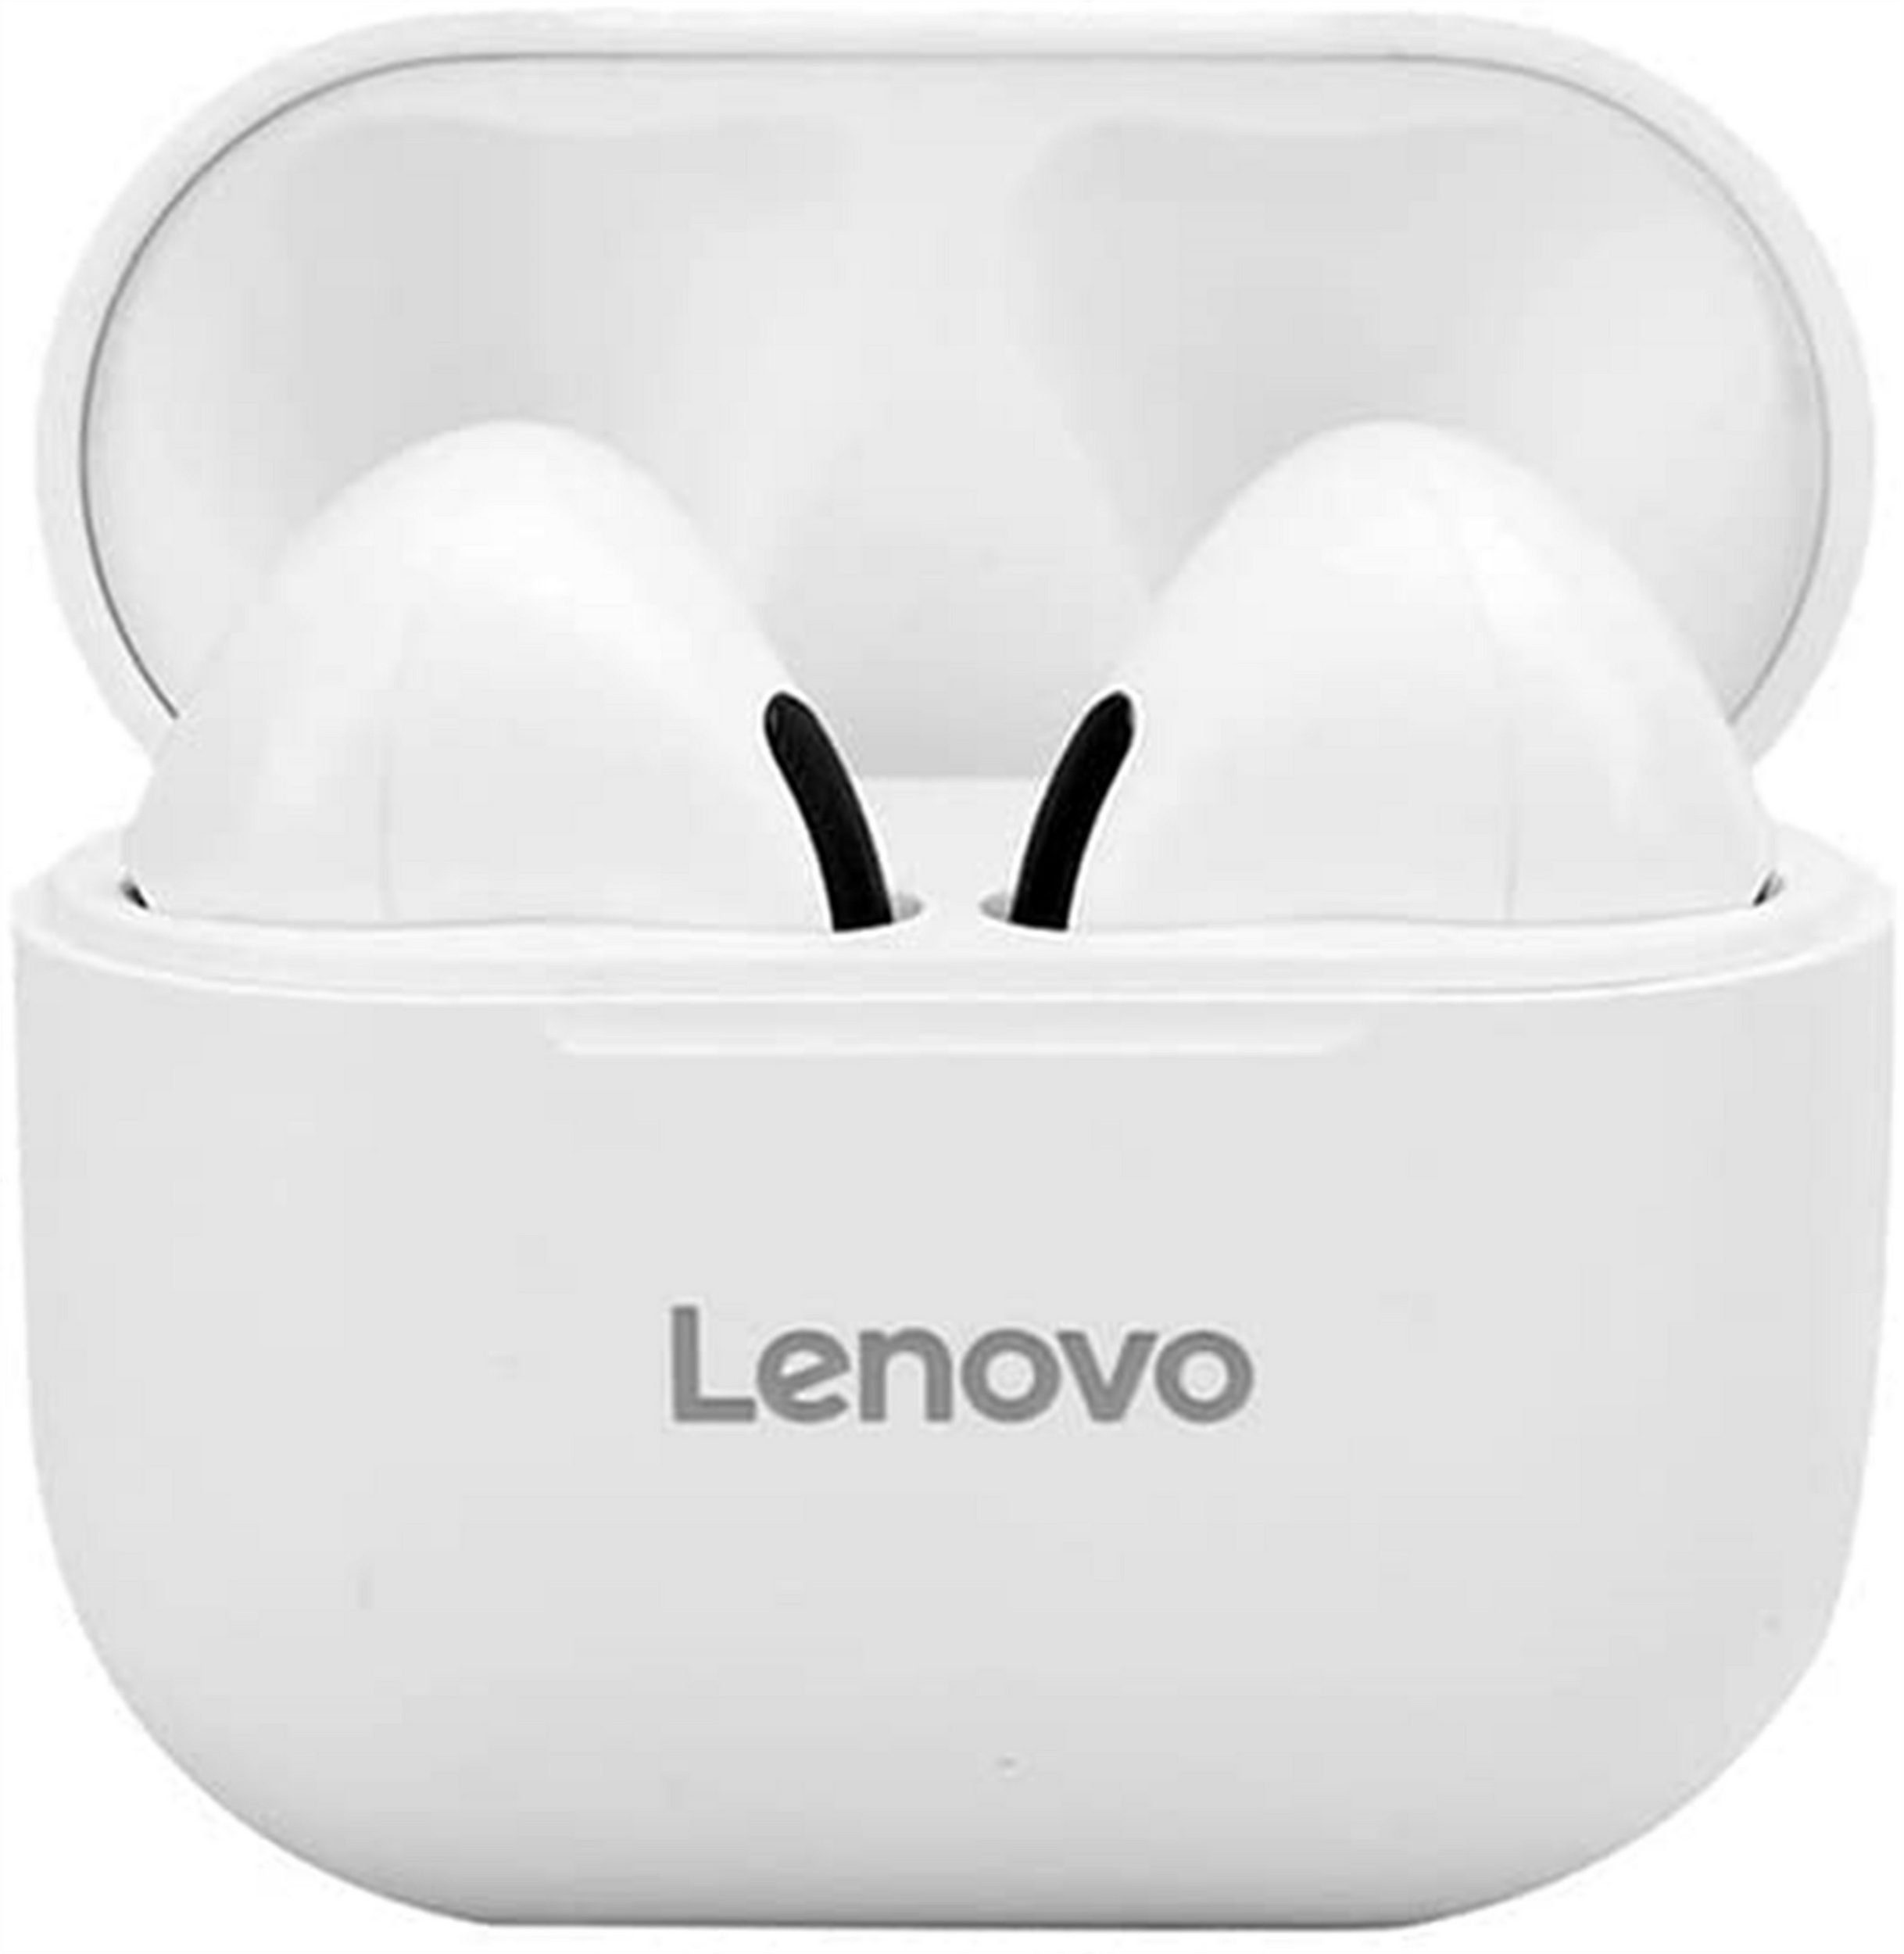 mAh Bluetooth - LP40 Weiß) mit Bluetooth-Kopfhörer kabellos, Lenovo Stereo-Ohrhörer Wireless, (True 5.0, 300 Touch-Steuerung Kopfhörer-Ladehülle mit